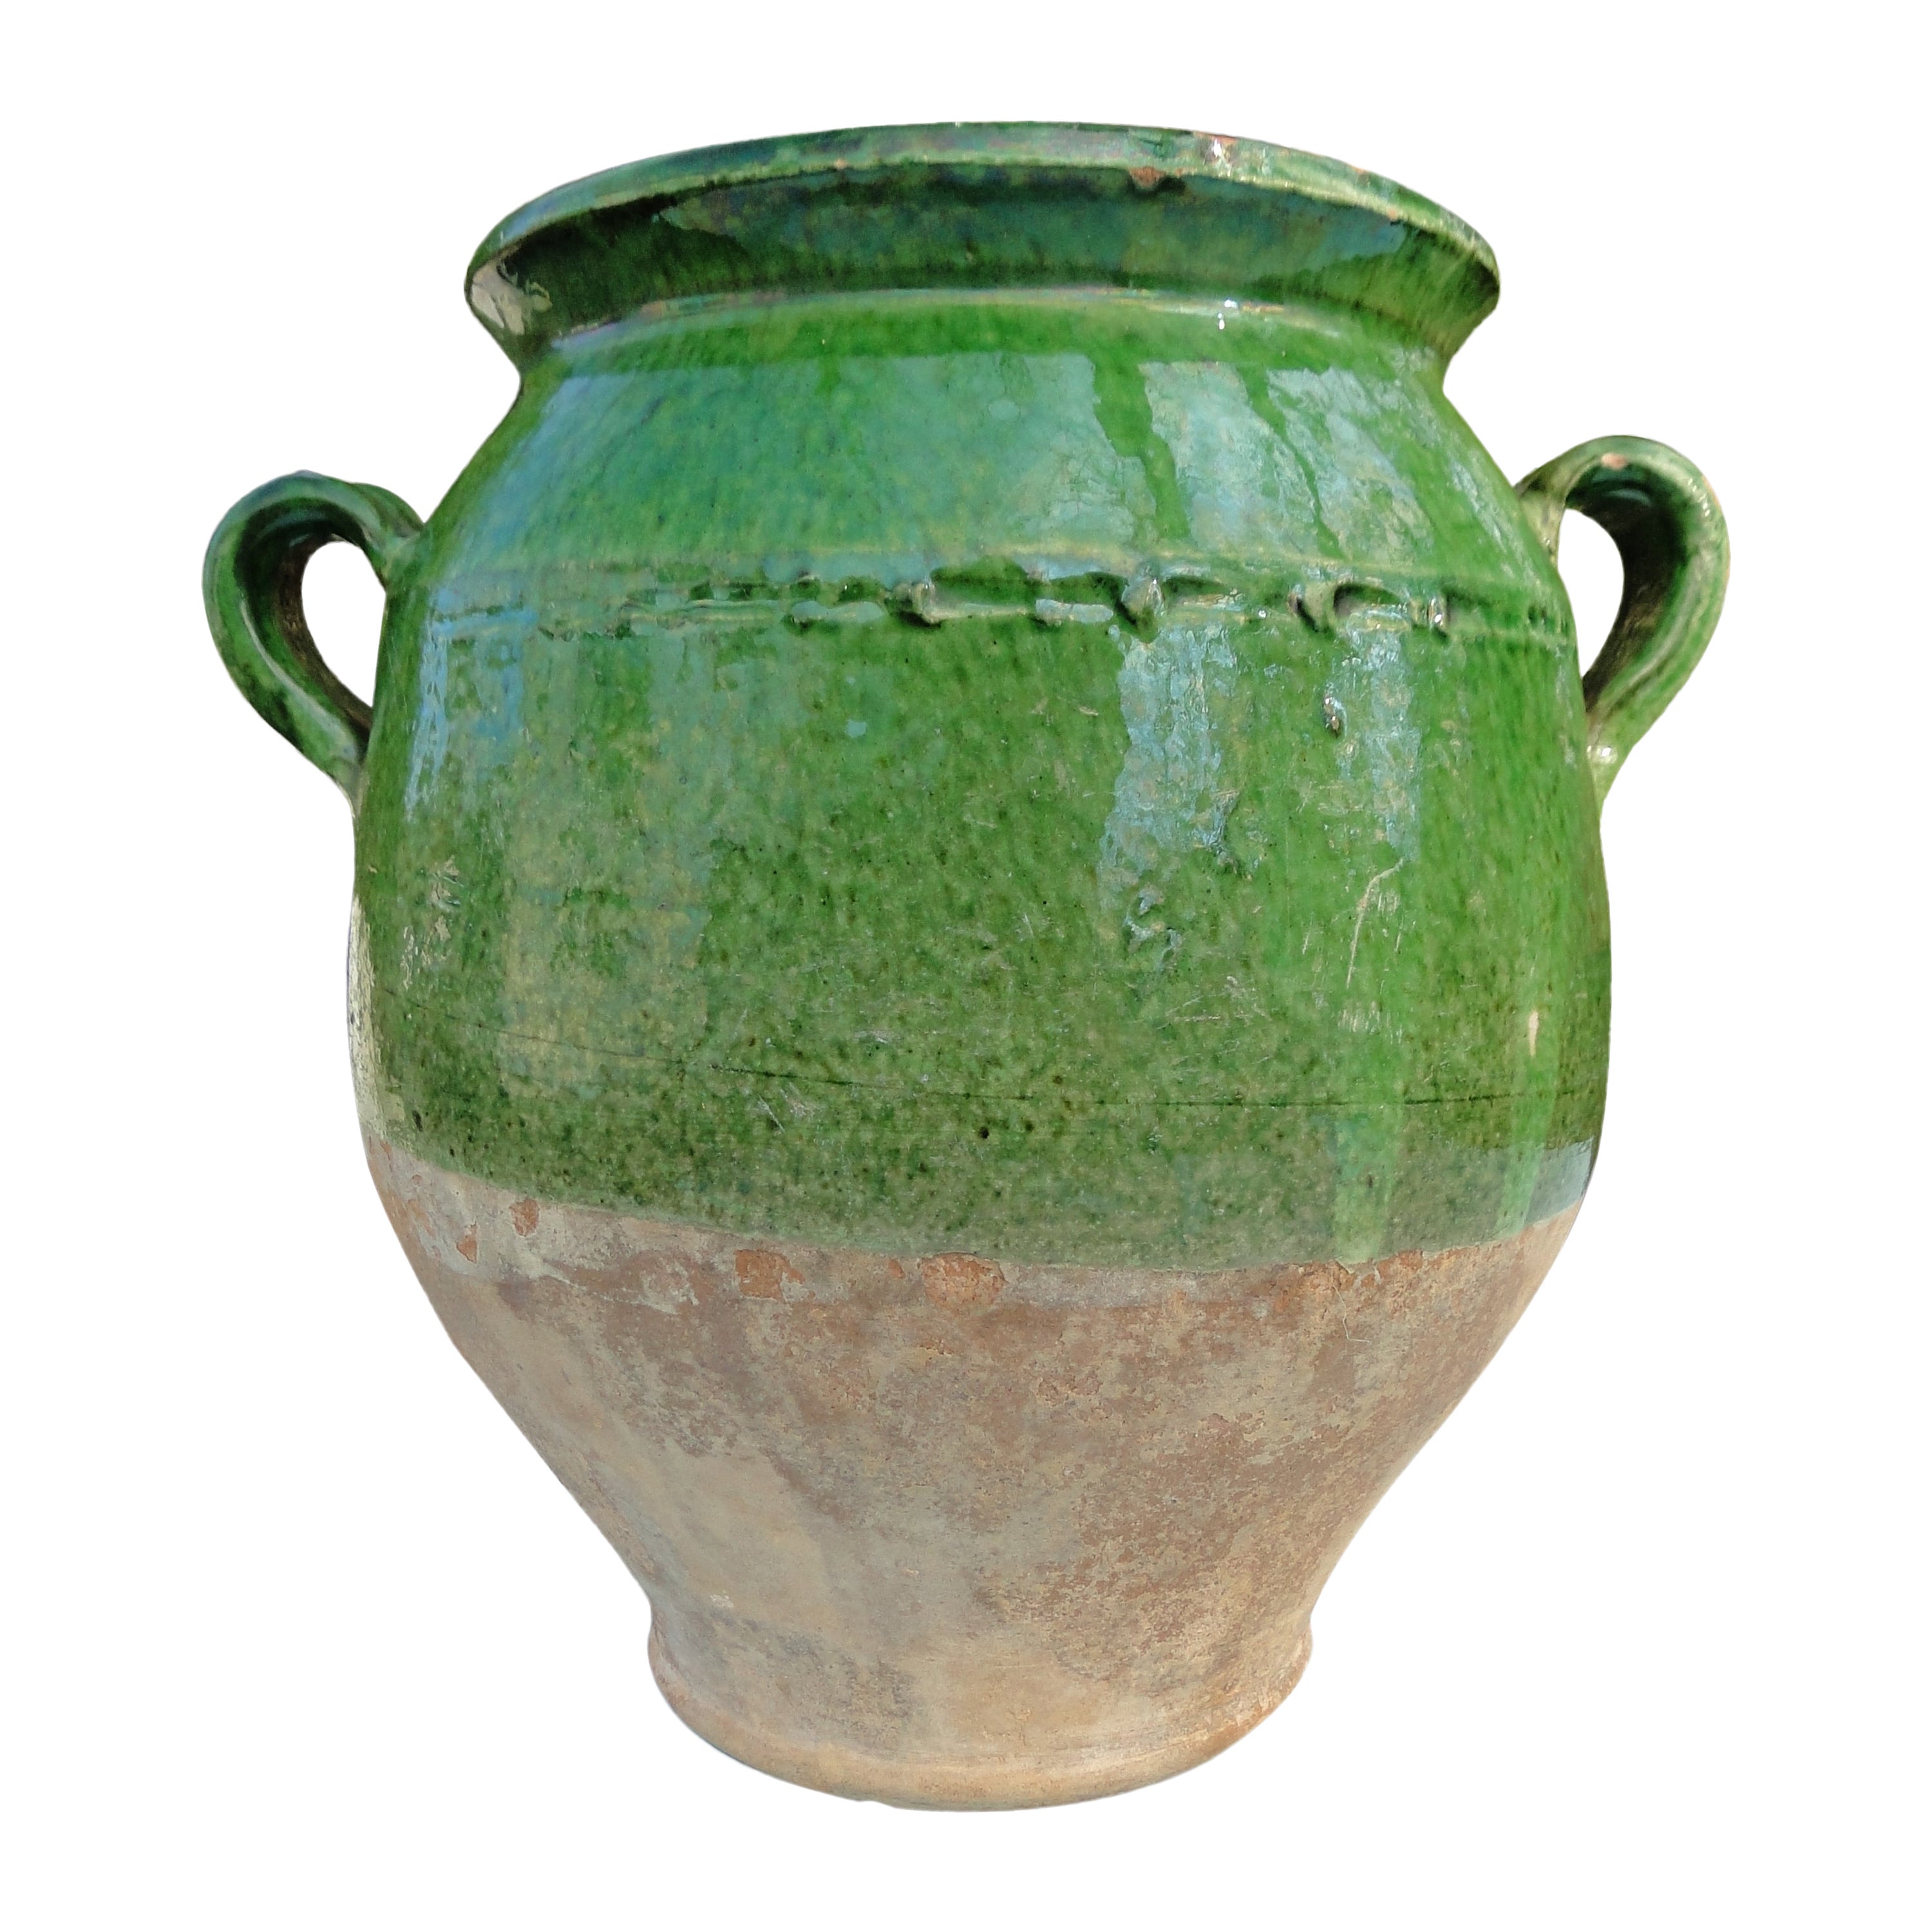  Ancienne poterie d'art française vert confit rouge faïence jauneware